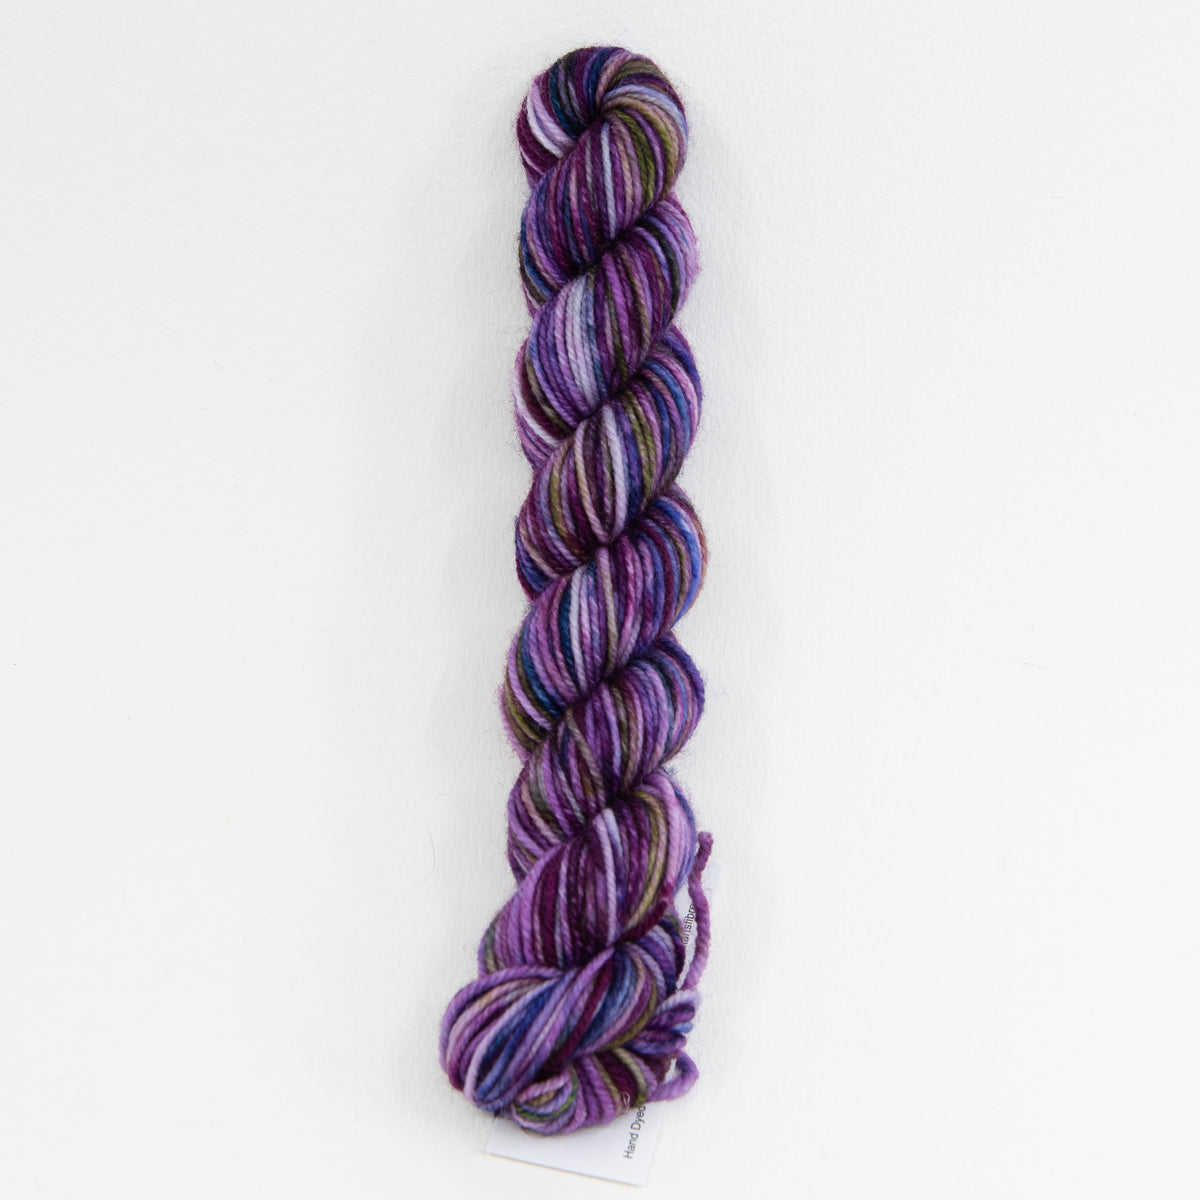 Beguilement - Socknado Mini Twister 20 Gram - Dyed Stock